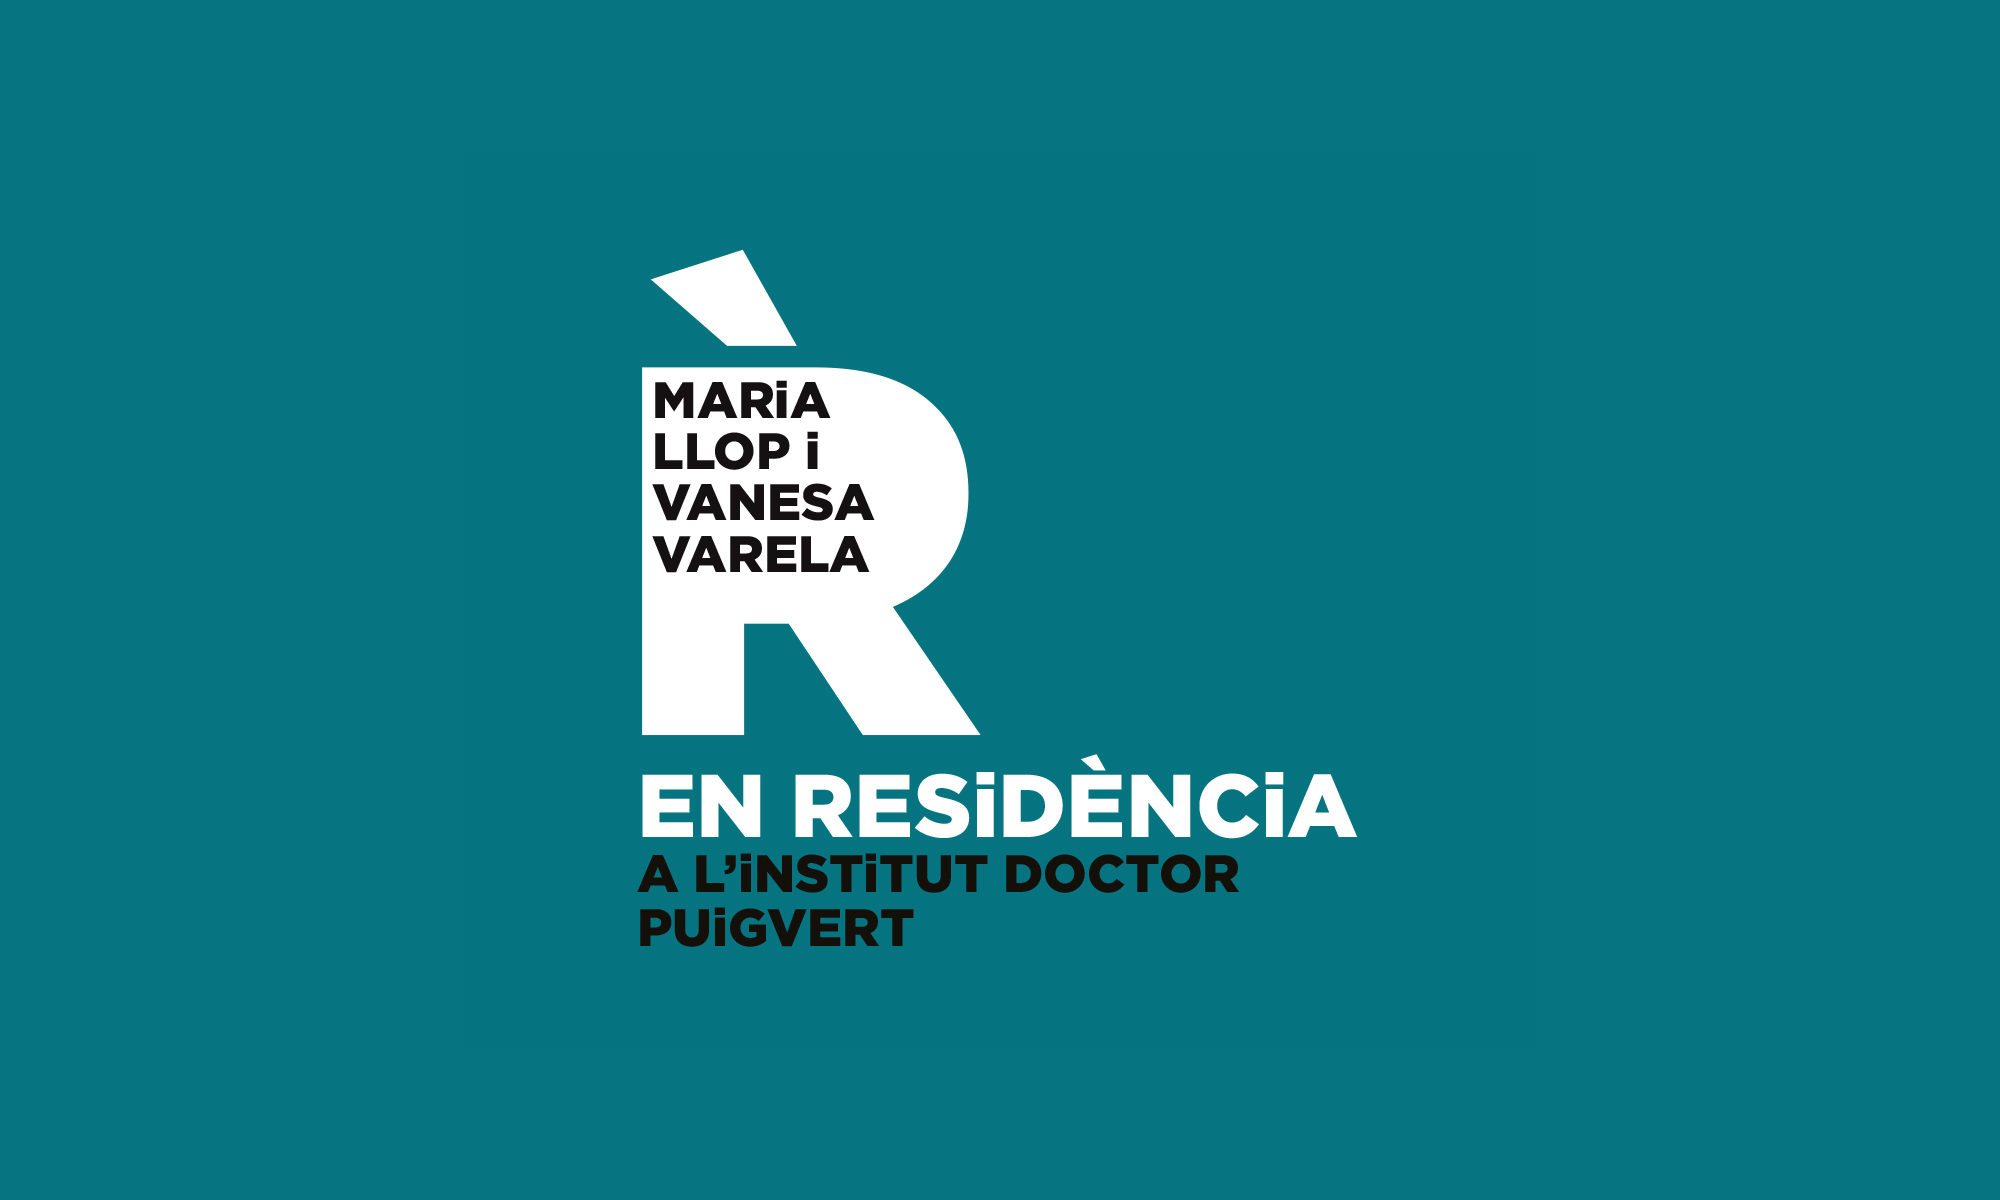 Maria Llop i Vanesa Varela EN RESIDÈNCIA